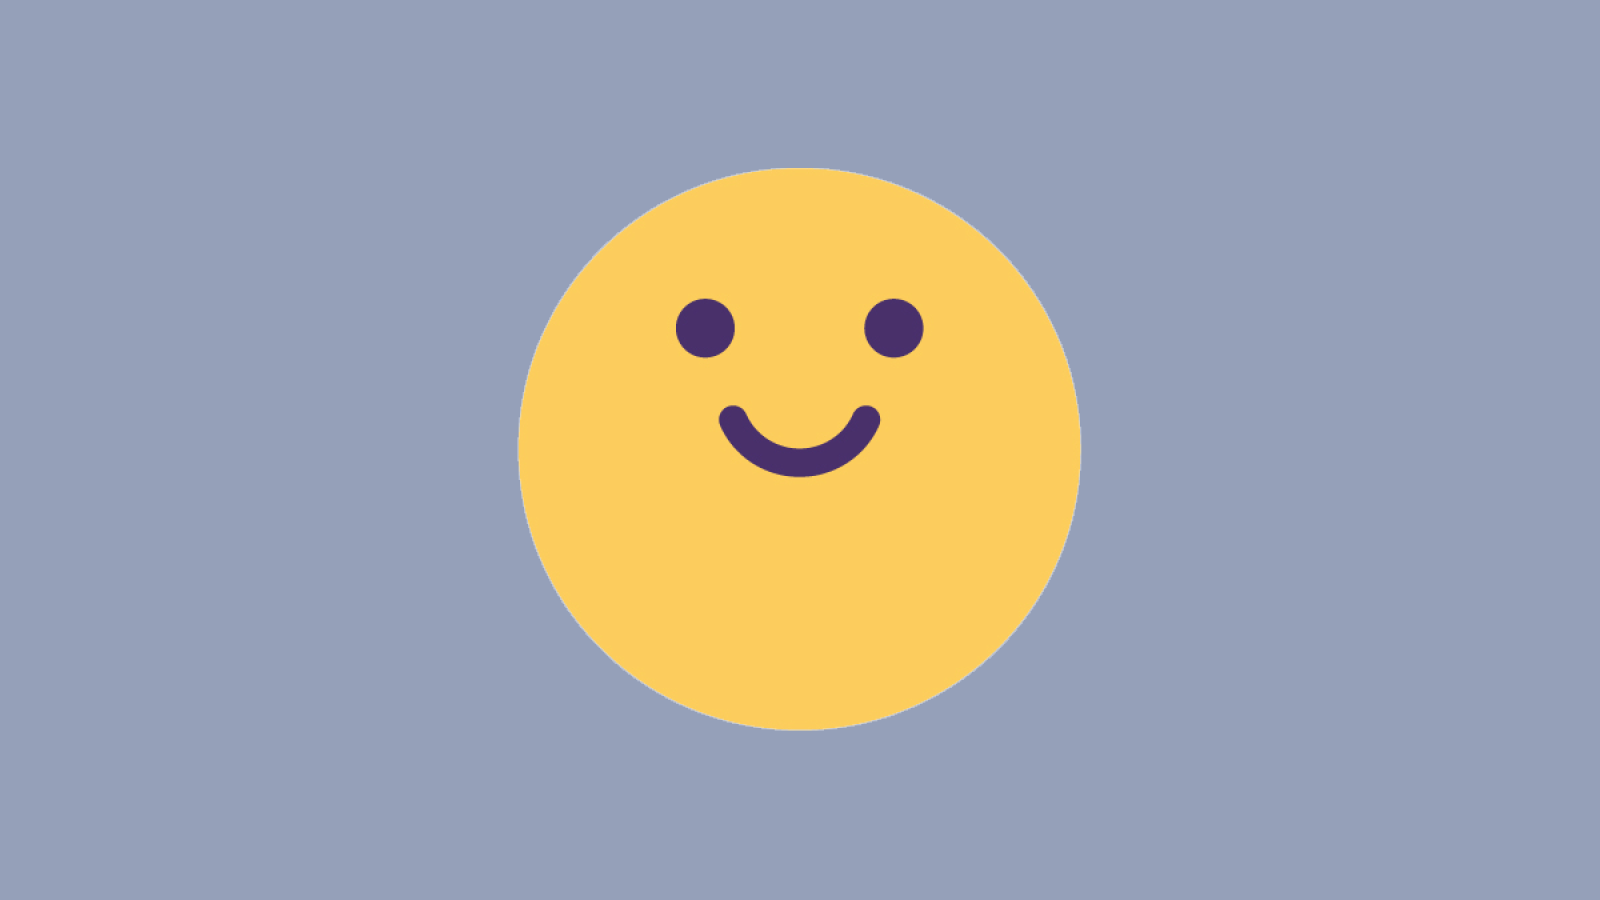 Smiley face emoji icon